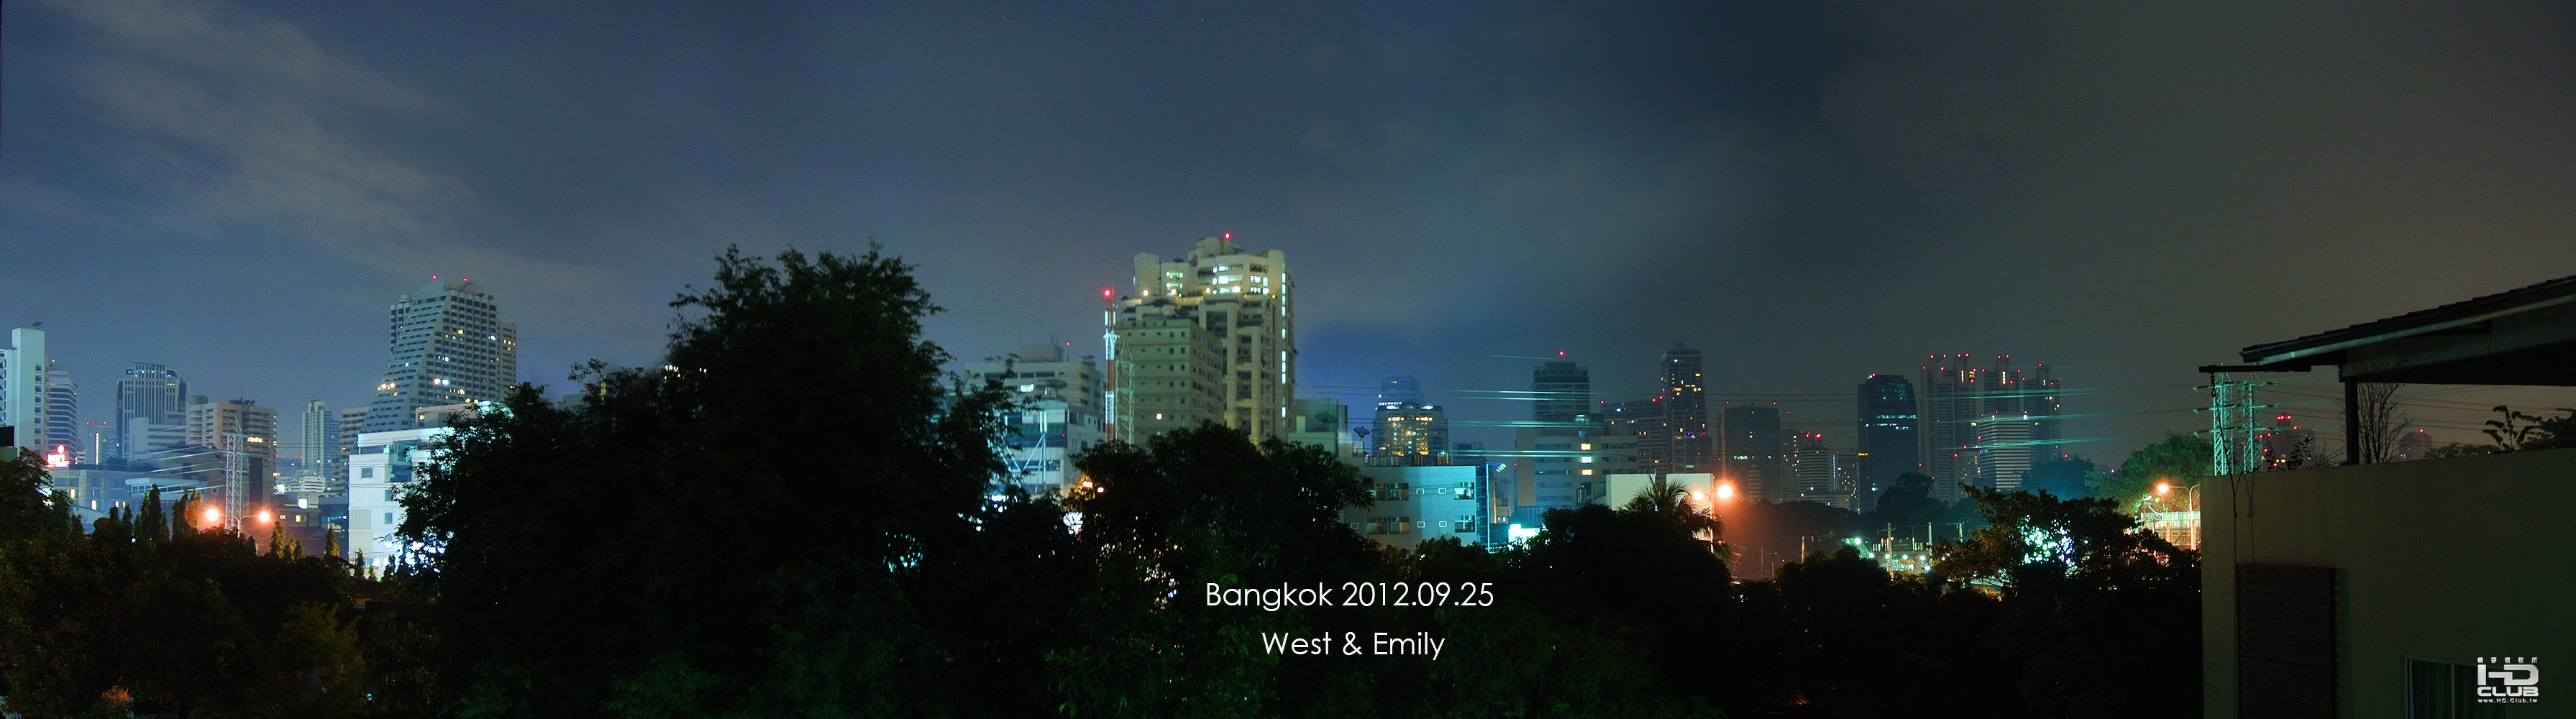 曼谷夜景.jpg